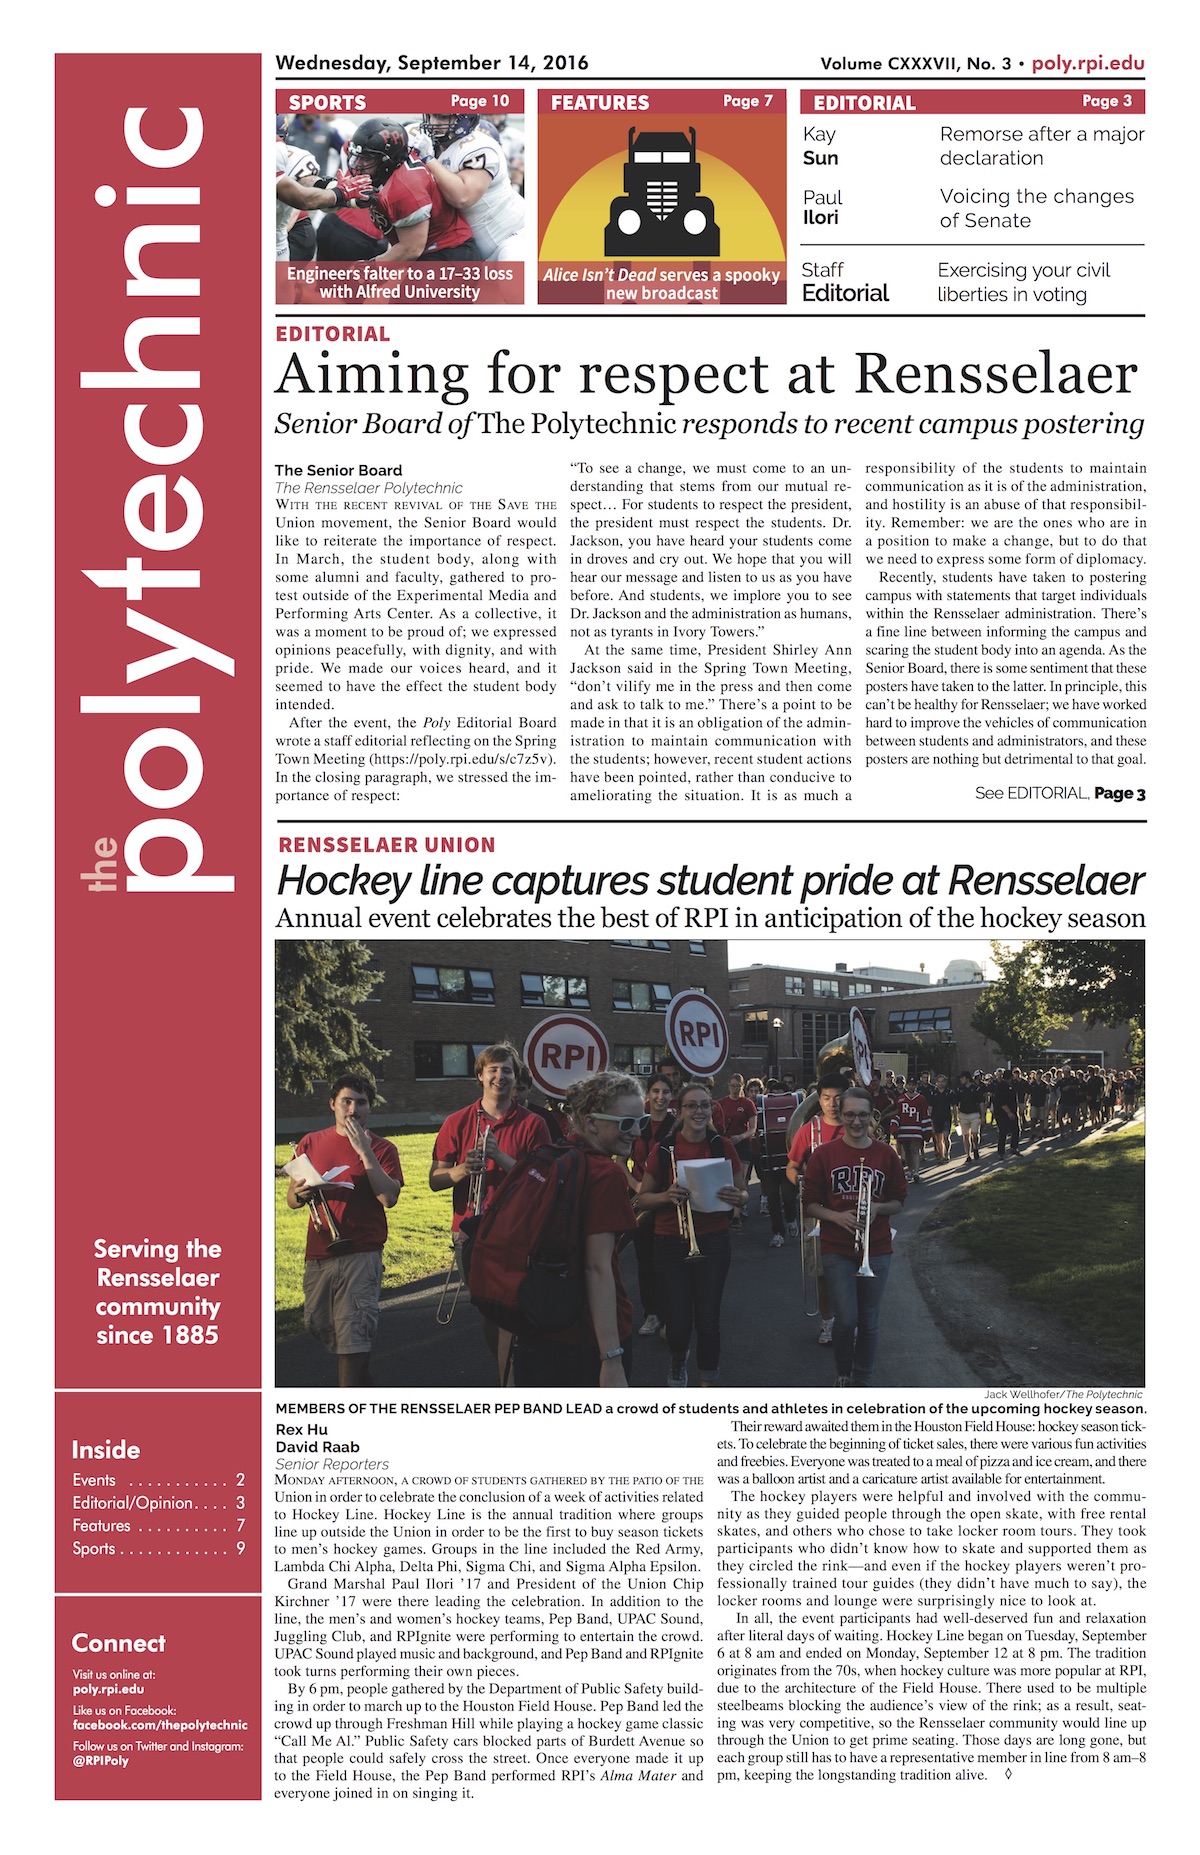 The Rensselaer Polytechnic September 14, 2016